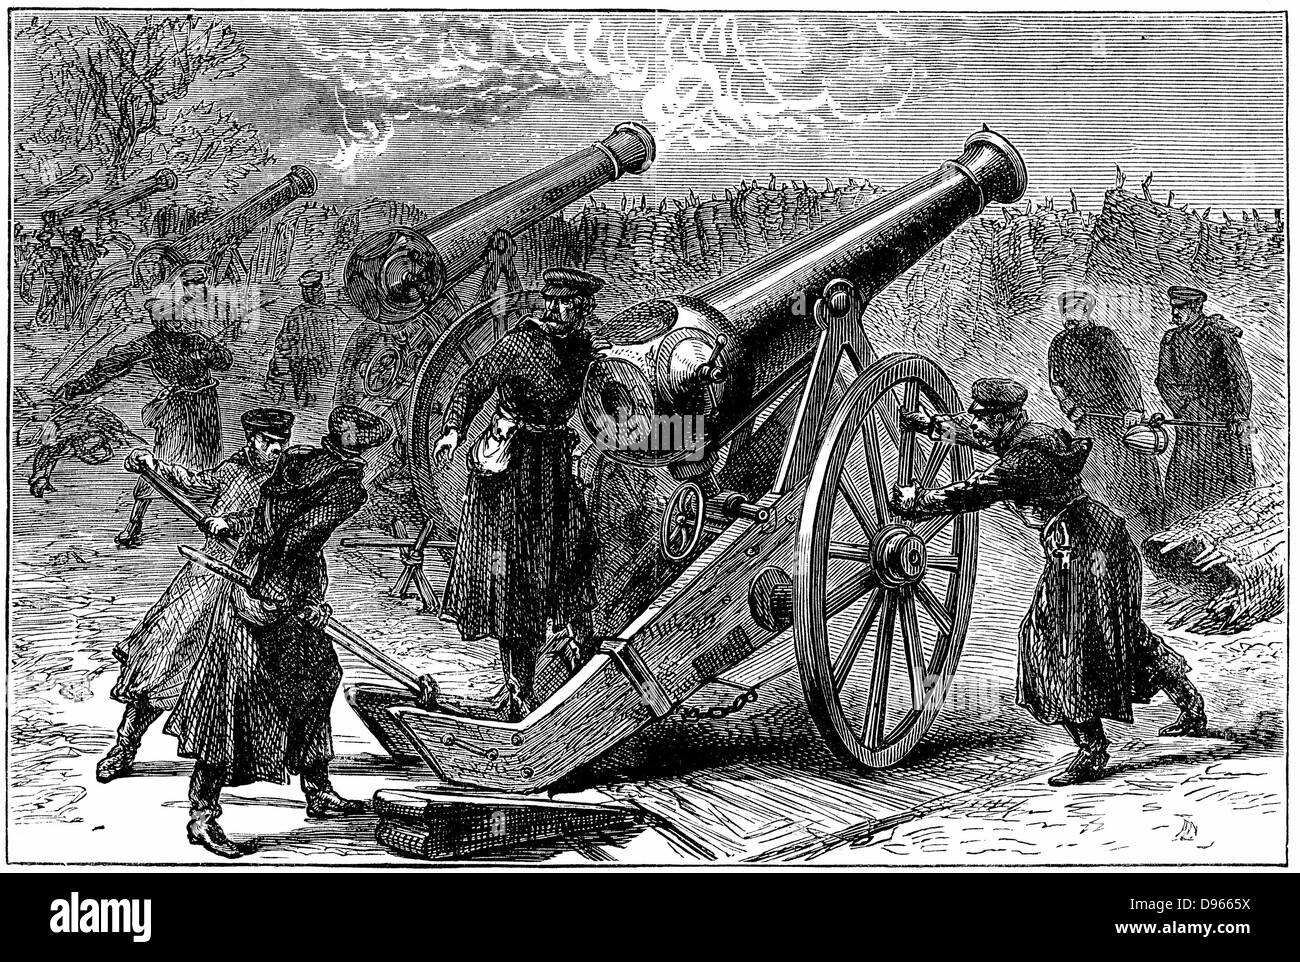 Guerra franco-prussiana 1870-1871. Pistole prussiano addestrato sulle città assediata di Parigi, gennaio 1871. Incisione su legno c1880. Foto Stock